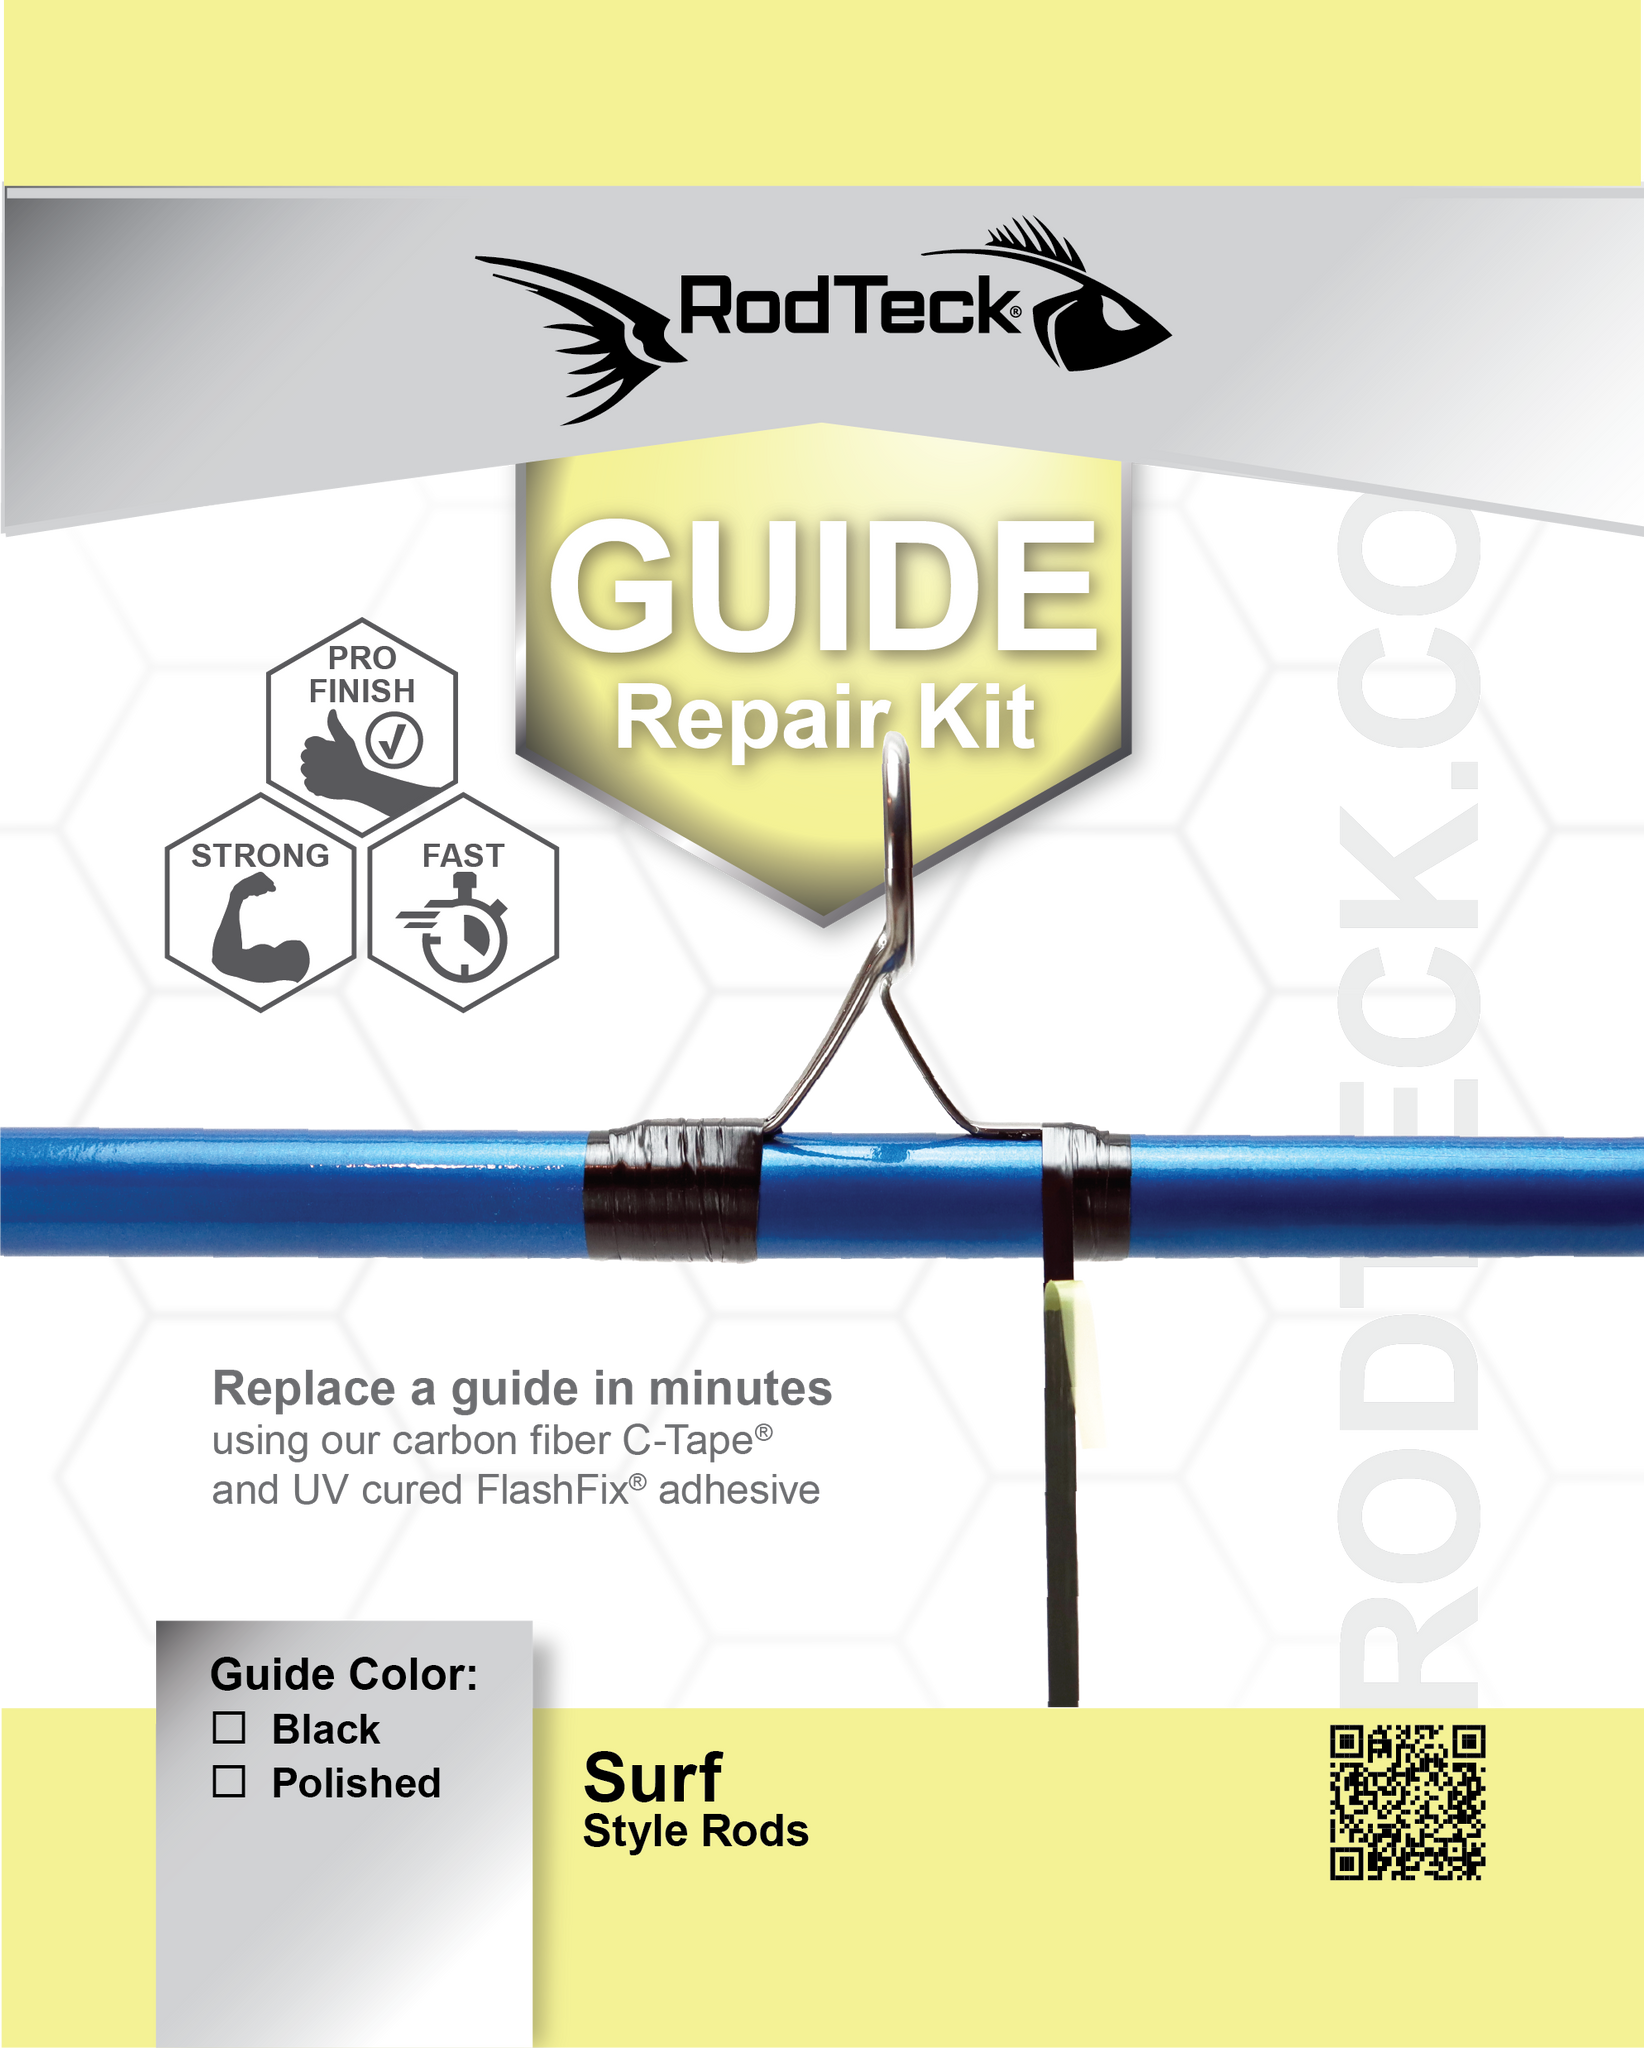 28 Pcs Fishing Rod Repair Kit Ring Rod Eye Guide Replacement Kit